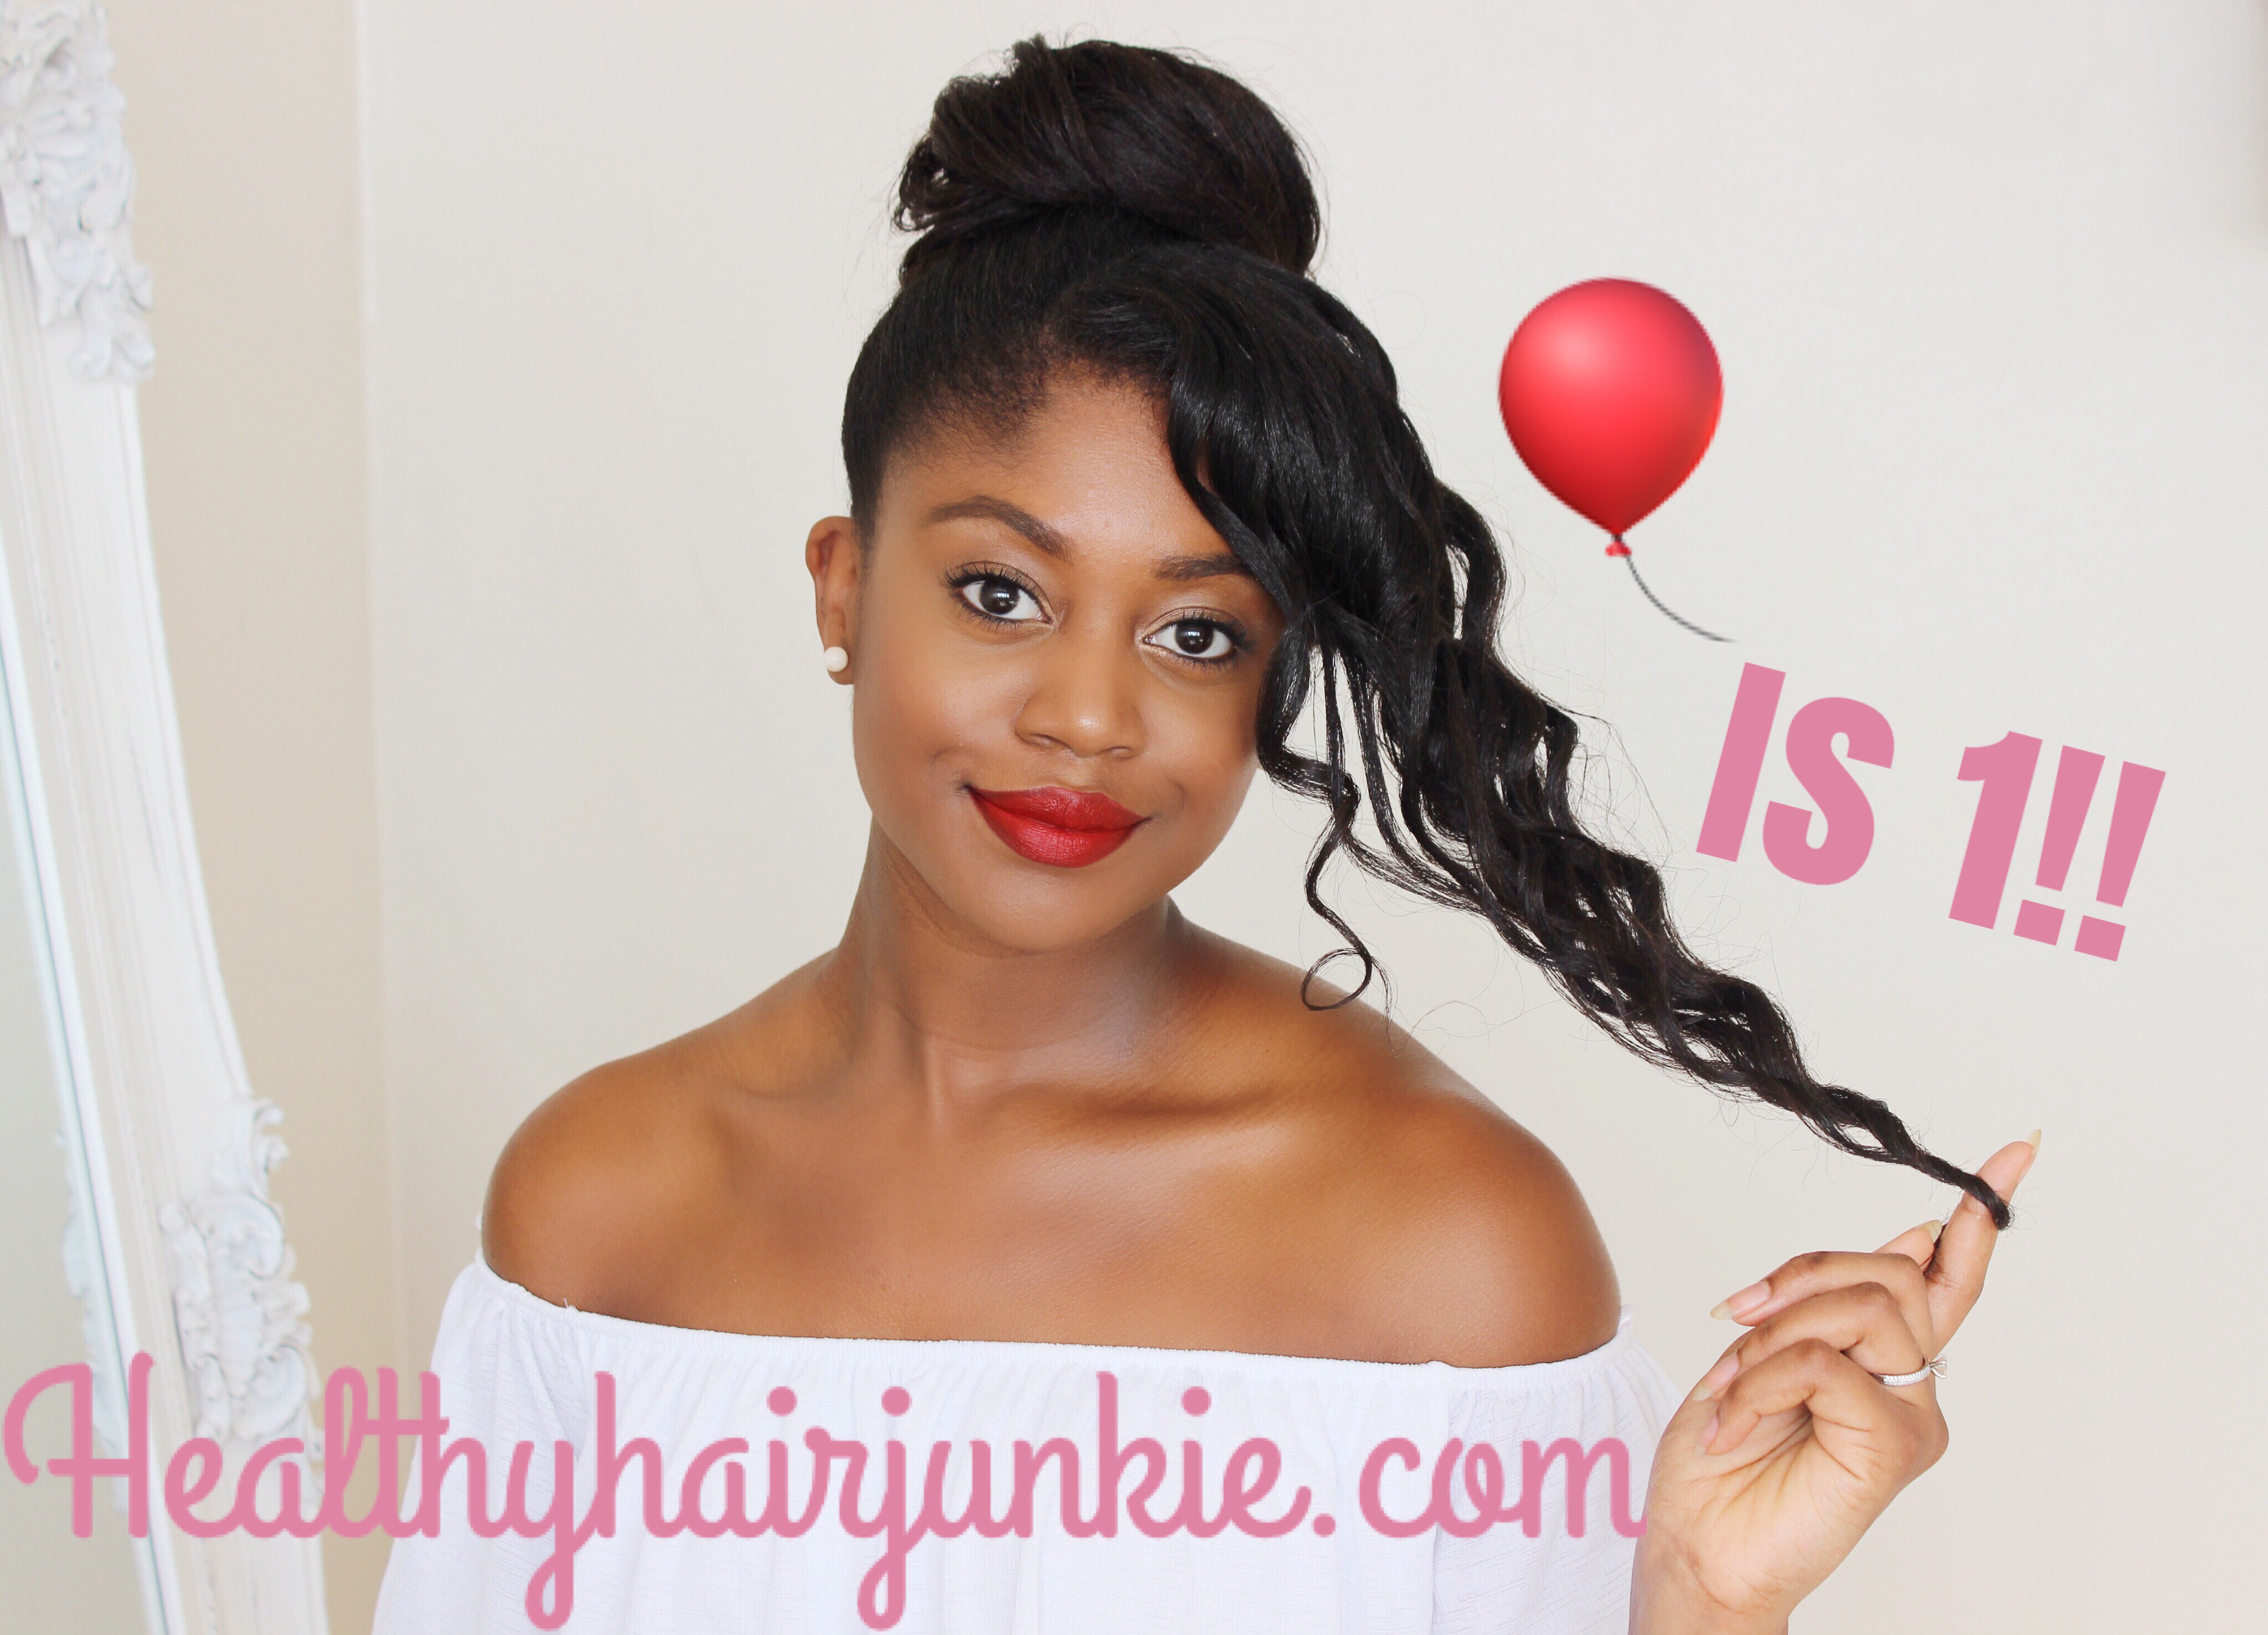 Healthy Hair Junkie| Healthyhairjunkie.com is 1!!